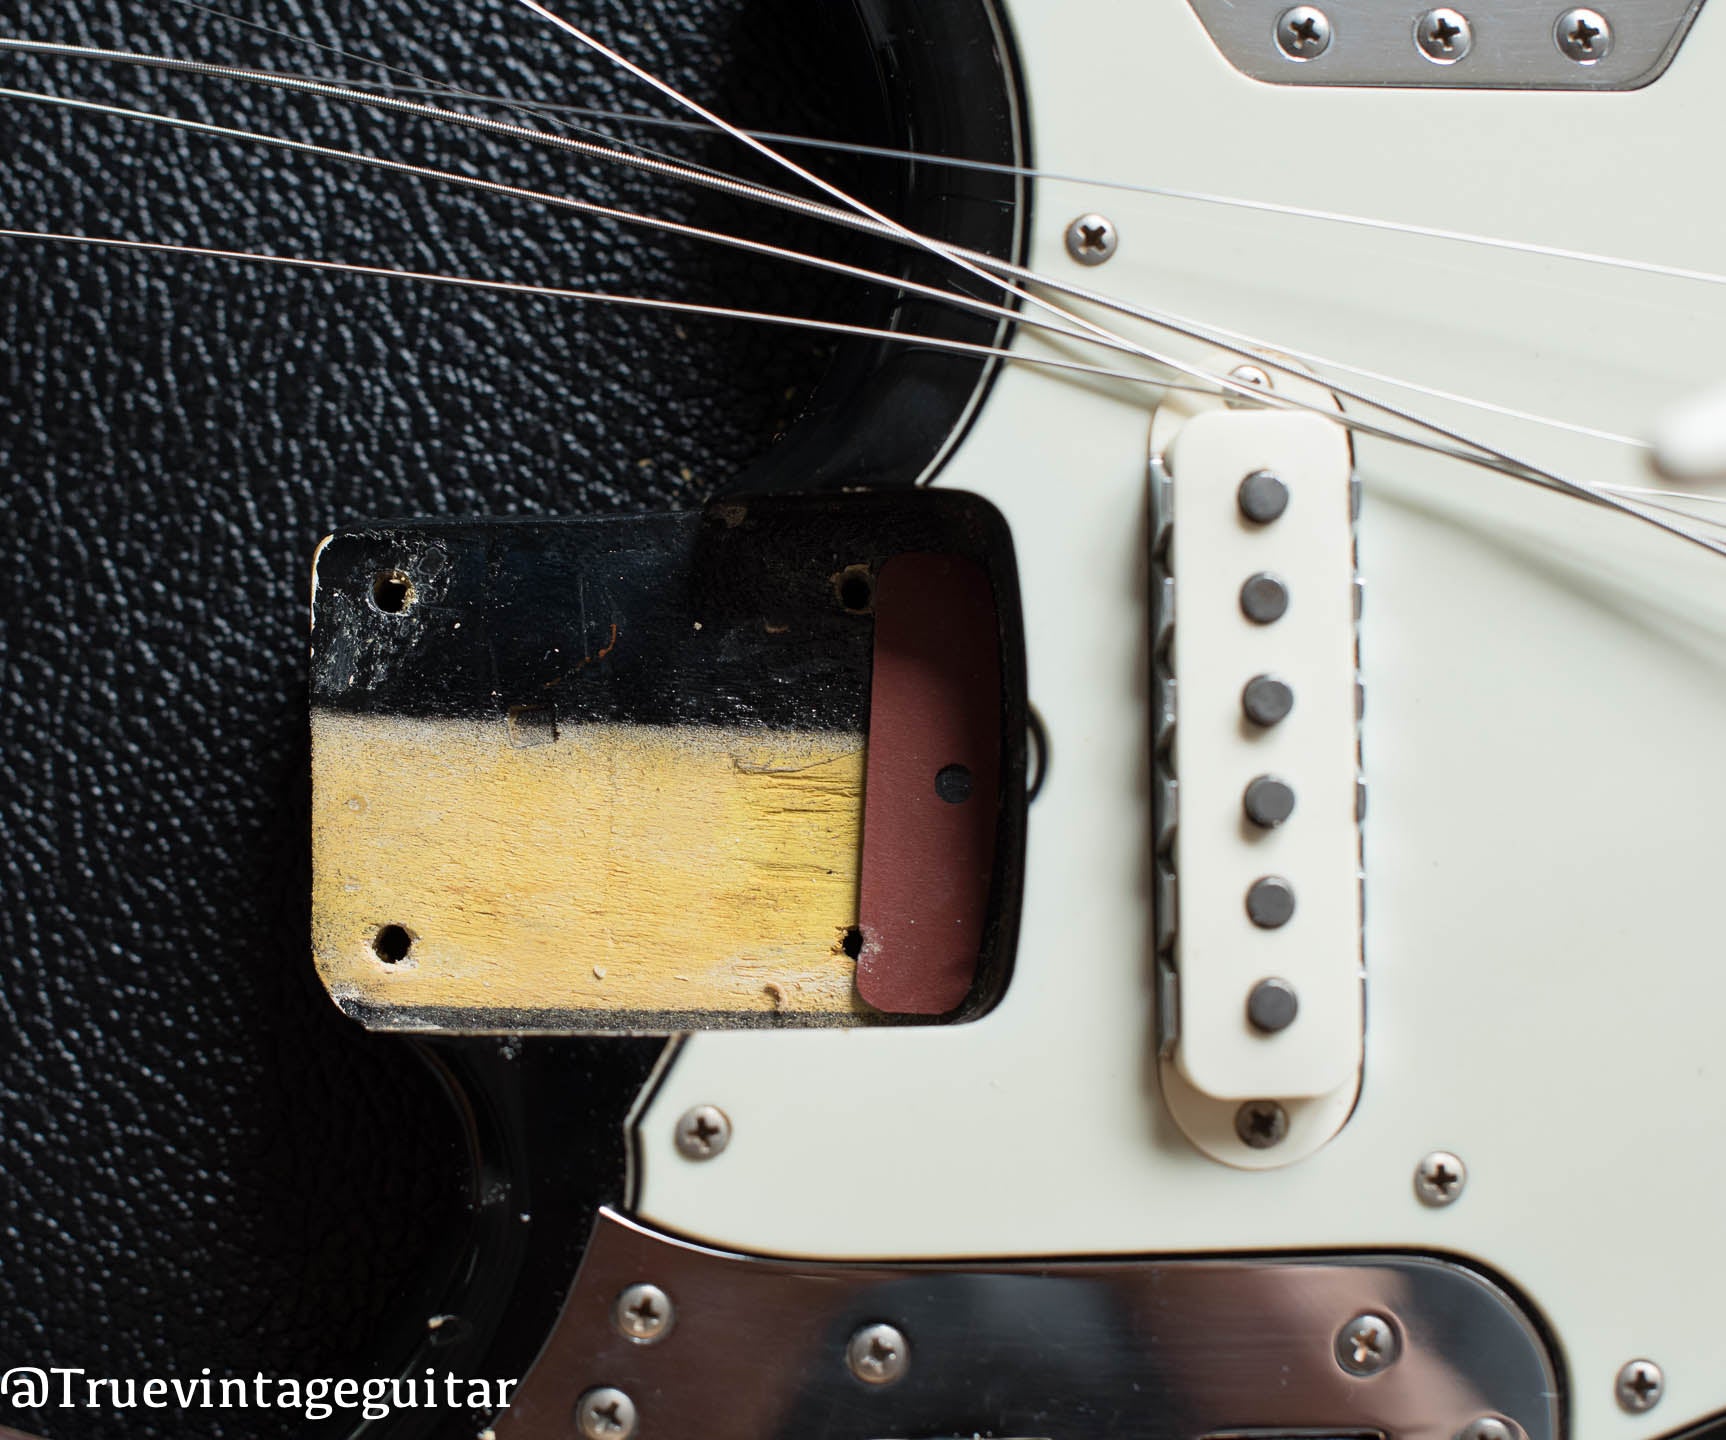 1964 Fender Jaguar Black, neck pocket, original finish